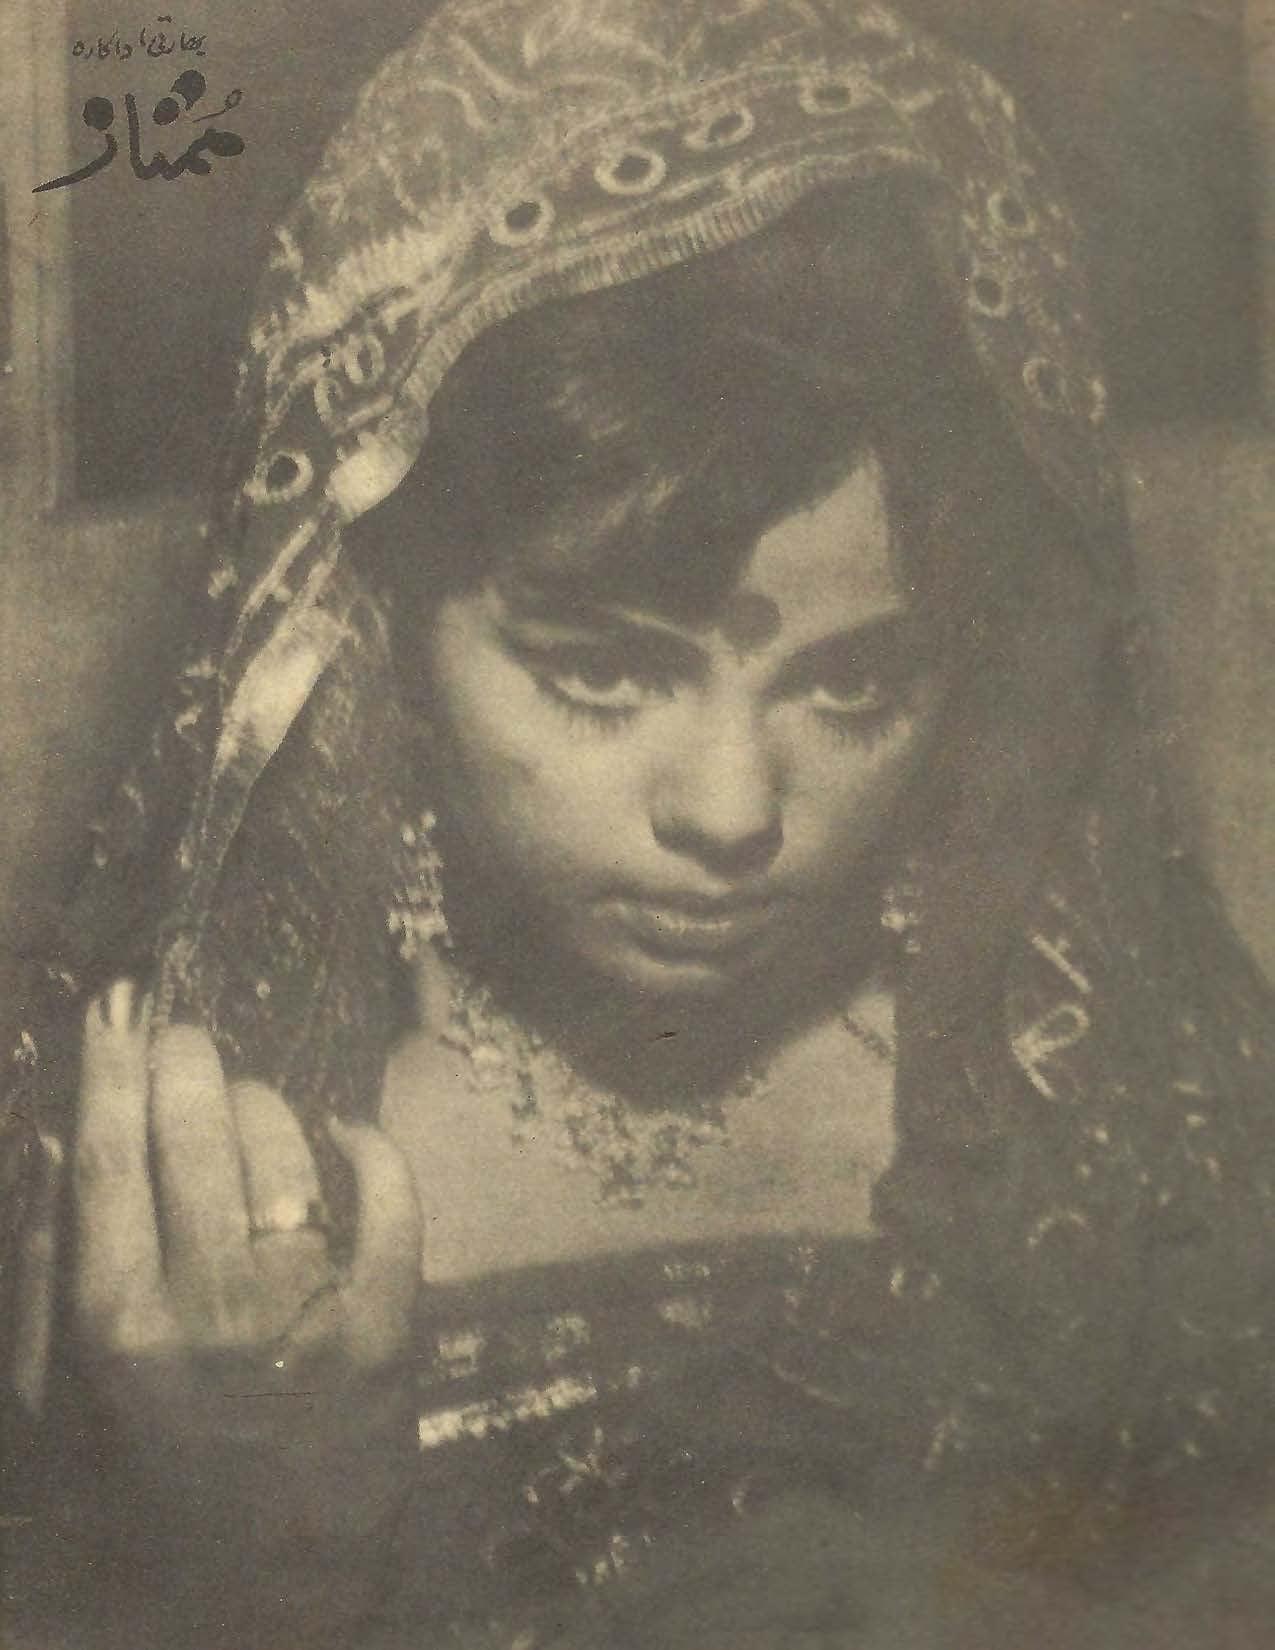 Shabab (Aug, 1974) - KHAJISTAN™